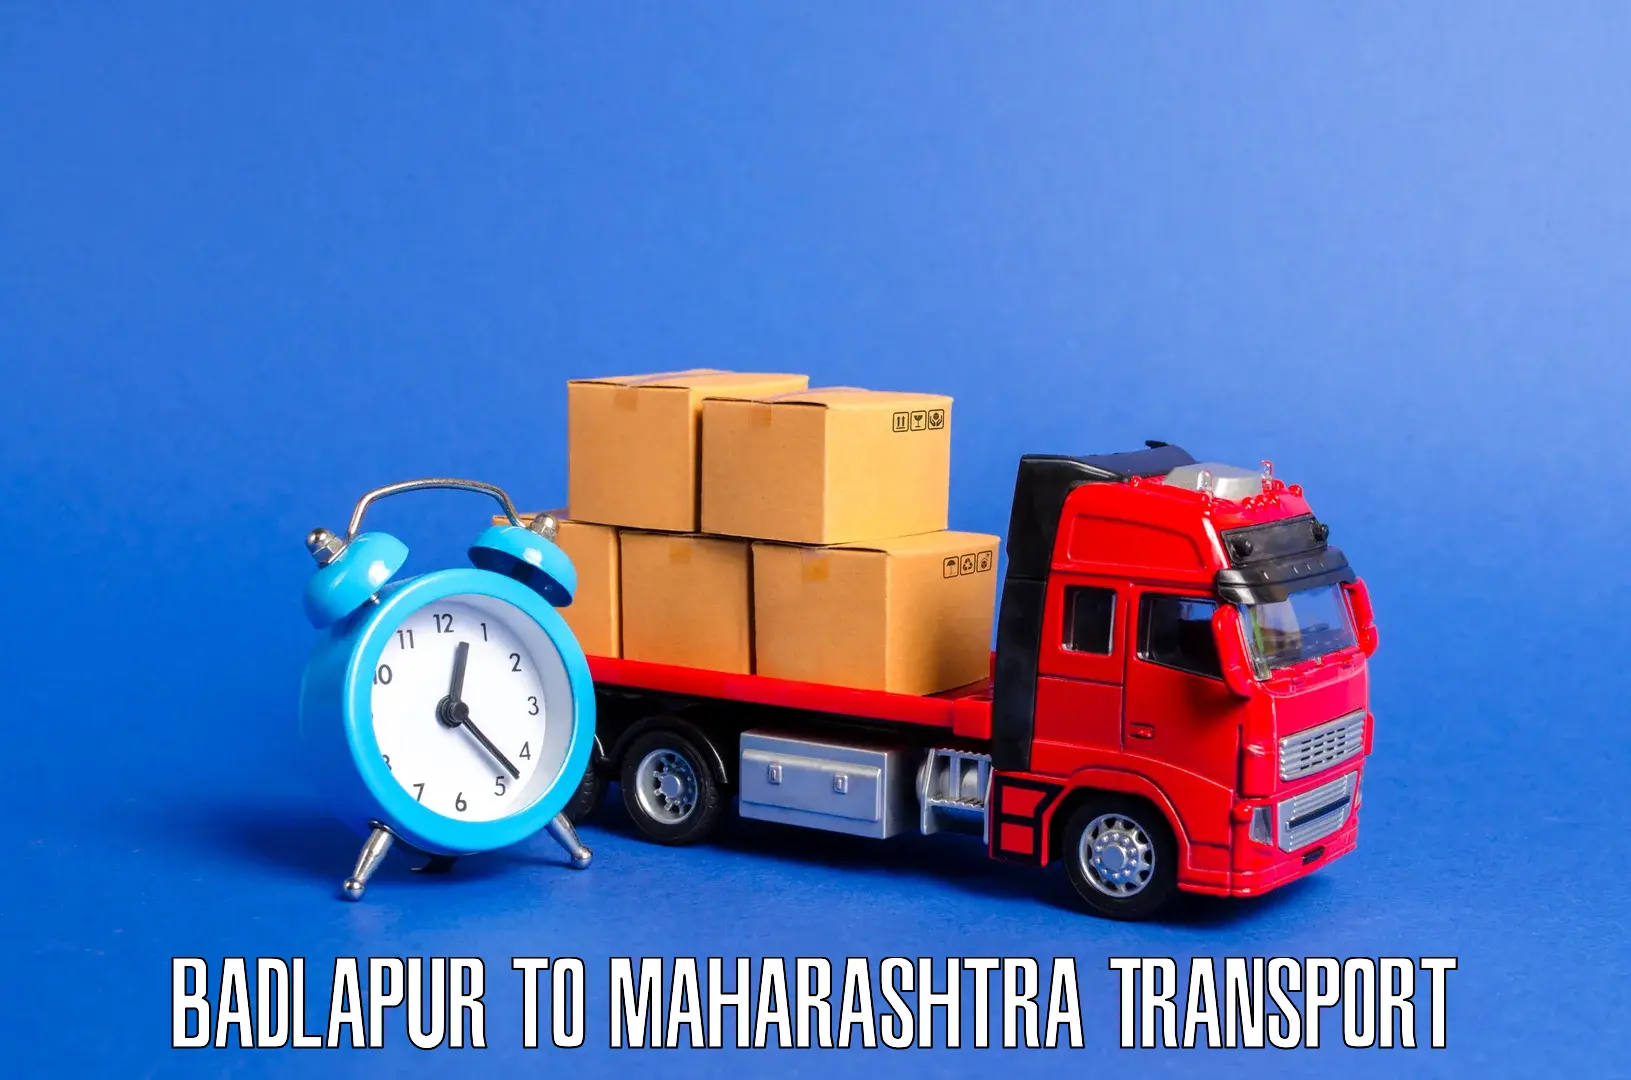 Nearby transport service Badlapur to Ashti